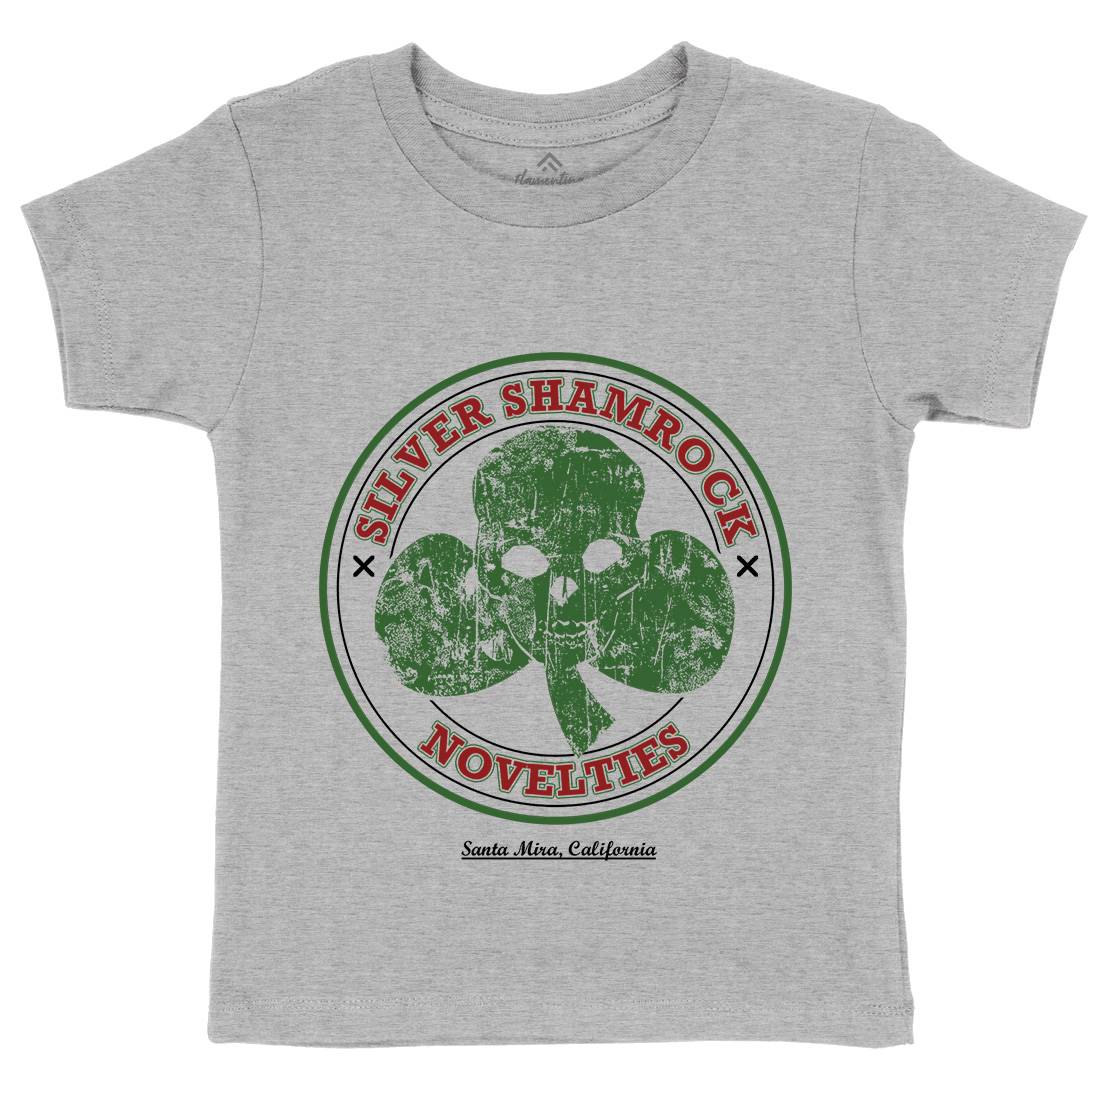 Silver Shamrock Novelties Kids Organic Crew Neck T-Shirt Horror D332